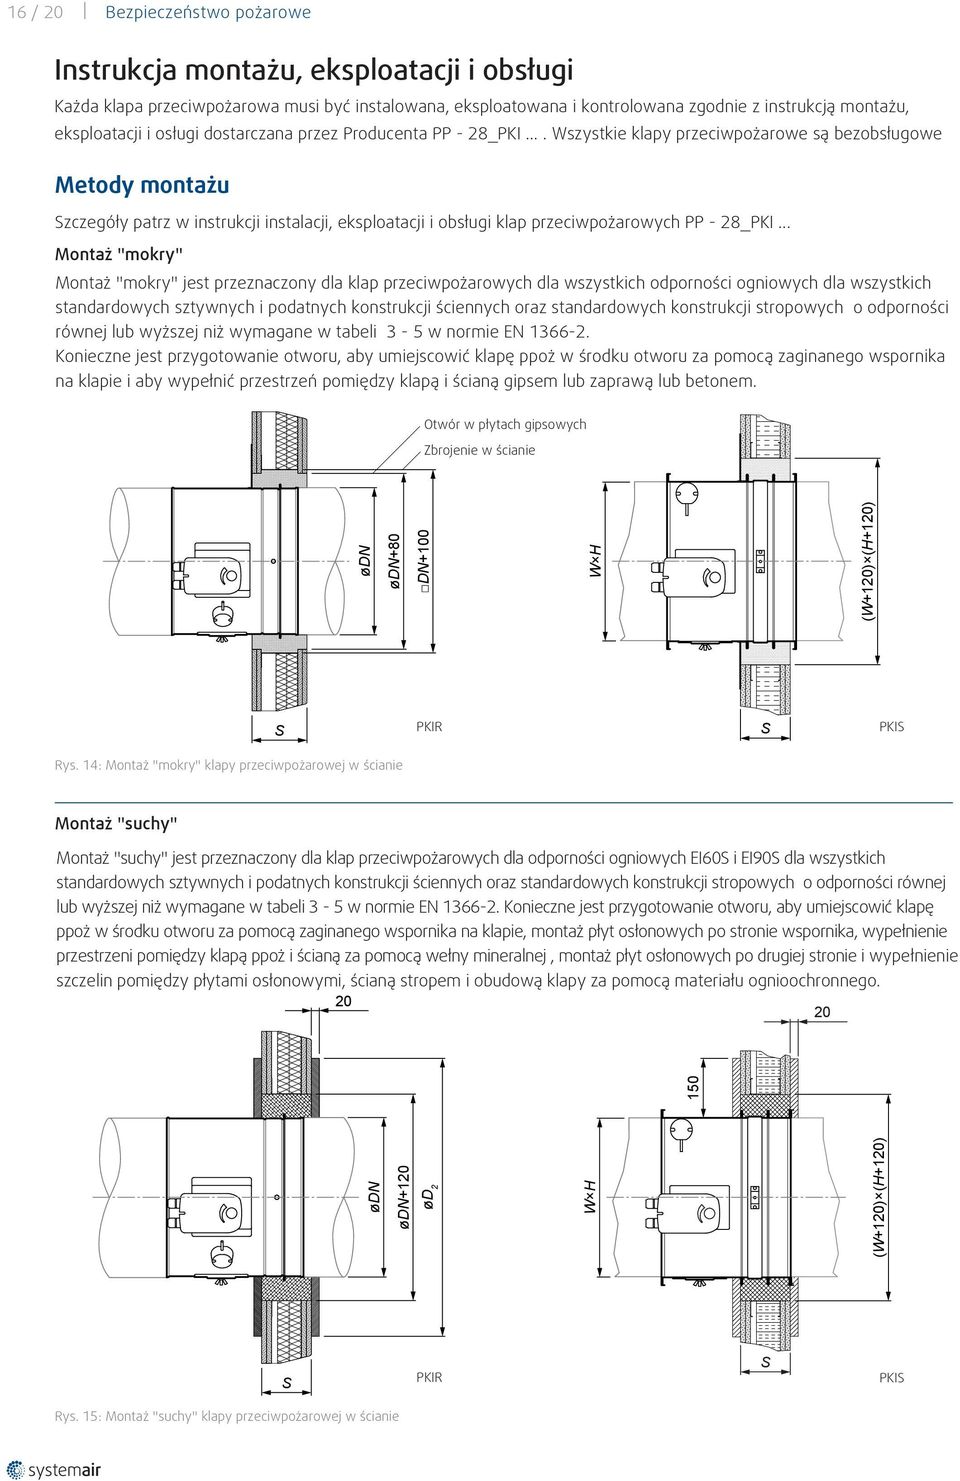 ... Wszystkie klapy przeciwpożarowe są bezobsługowe Metody montażu Szczegóły patrz w instrukcji instalacji, eksploatacji i obsługi klap przeciwpożarowych PP - 28_PKI.